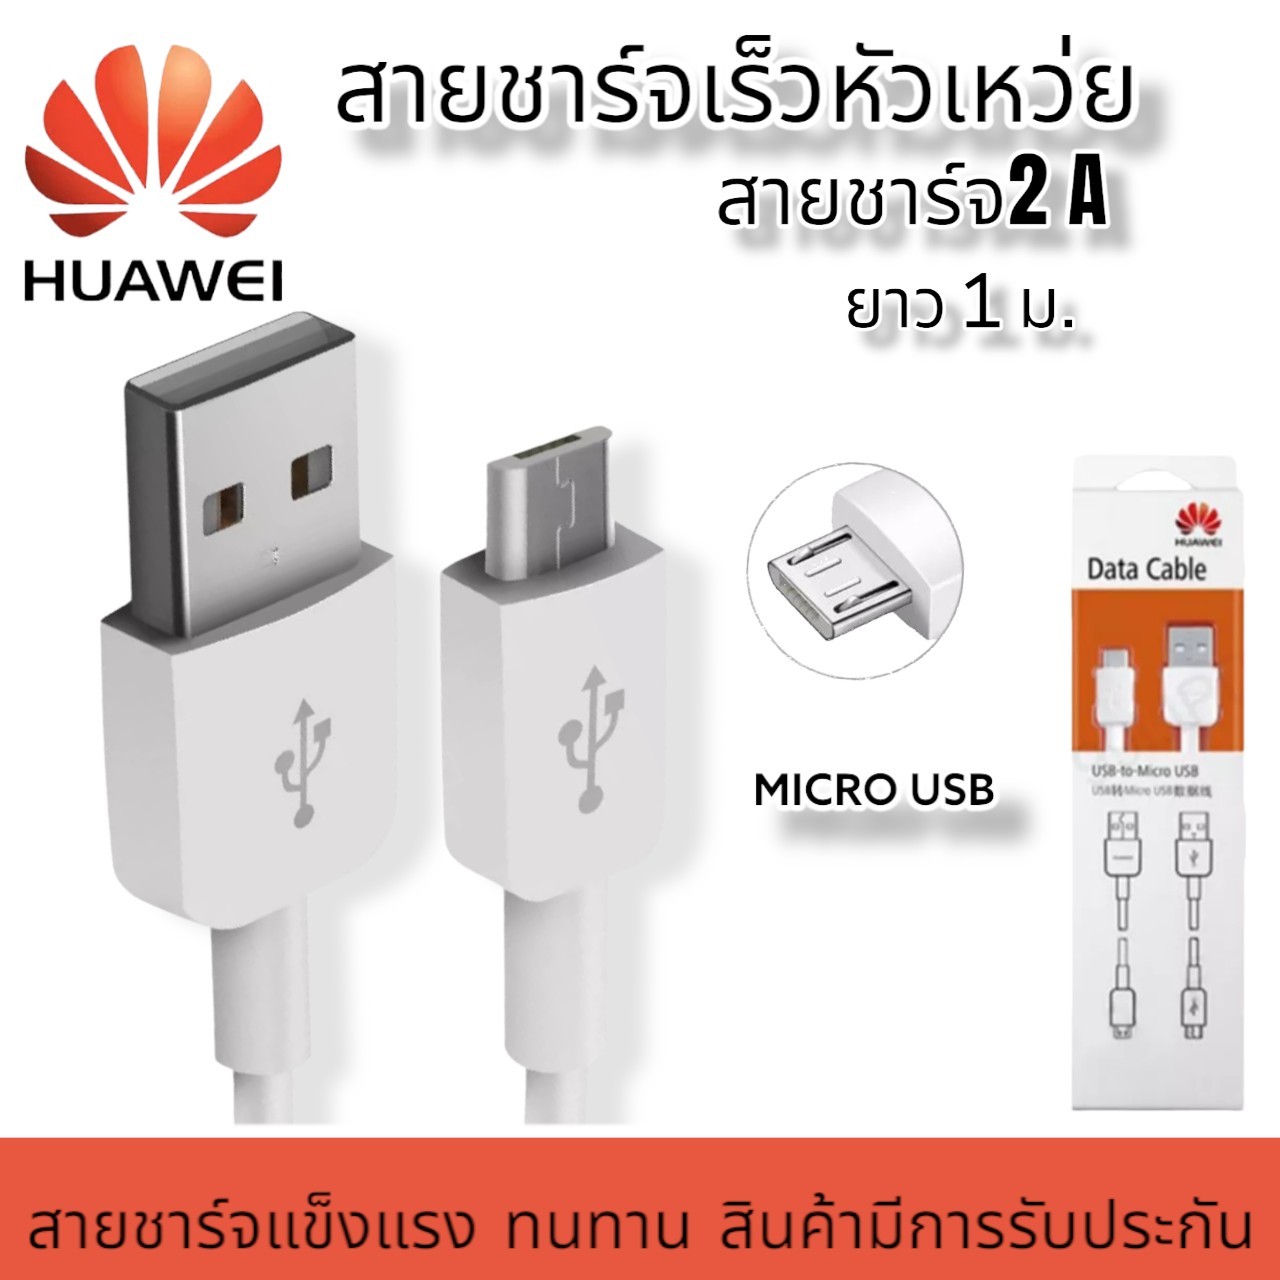 สายชาร์จ หัวเหว่ย Huawei Micro USB Fast Charge ของแท้ รองรับY3,Y5,Y6,Y7,Y7pro,Y9,Nova2i,3i,Mate7,Mate8 honor7C 8X 8 รุ่นอื่นๆ by PTmini shop